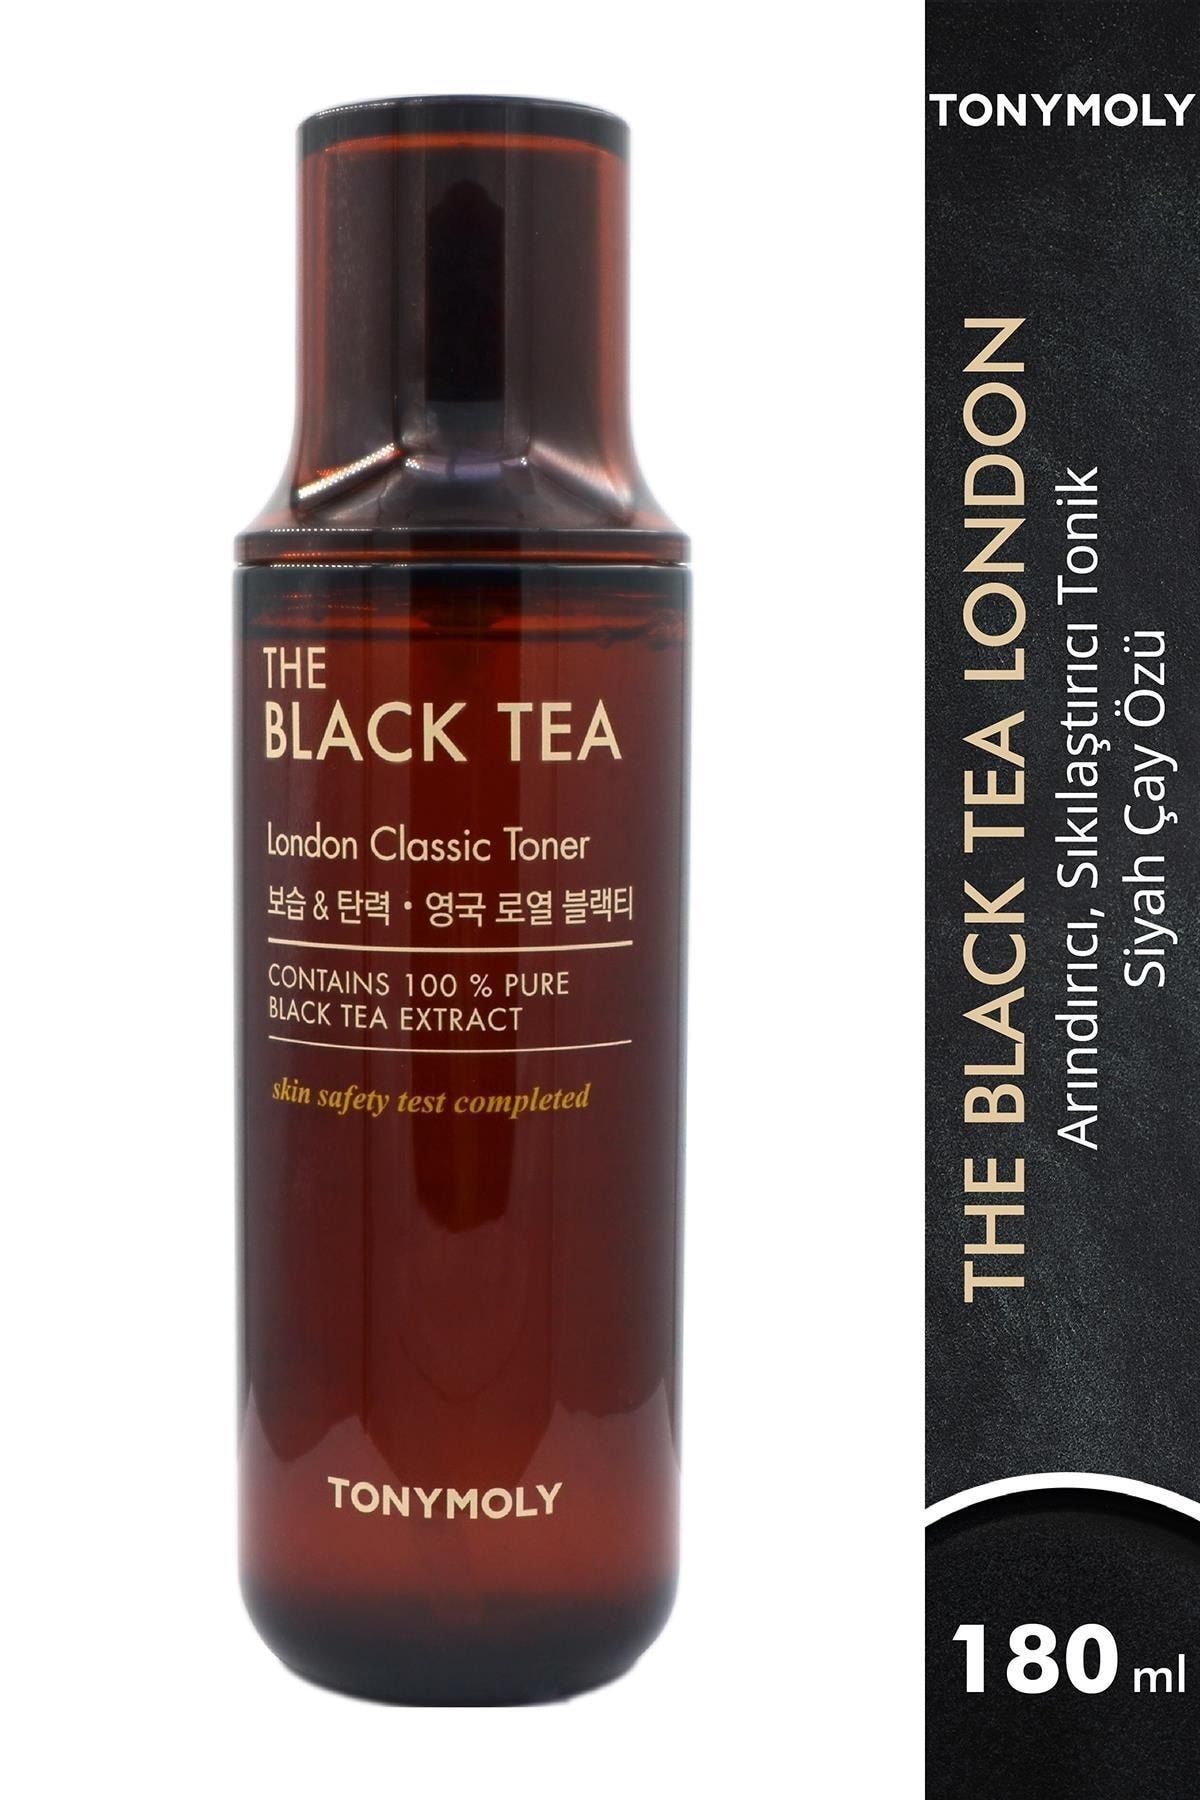 TONYMOLY Tonik The Black Tea London Arındırıcı Sıkılaştırıcı Siyah Çay Cilt Bakımı 150 ml